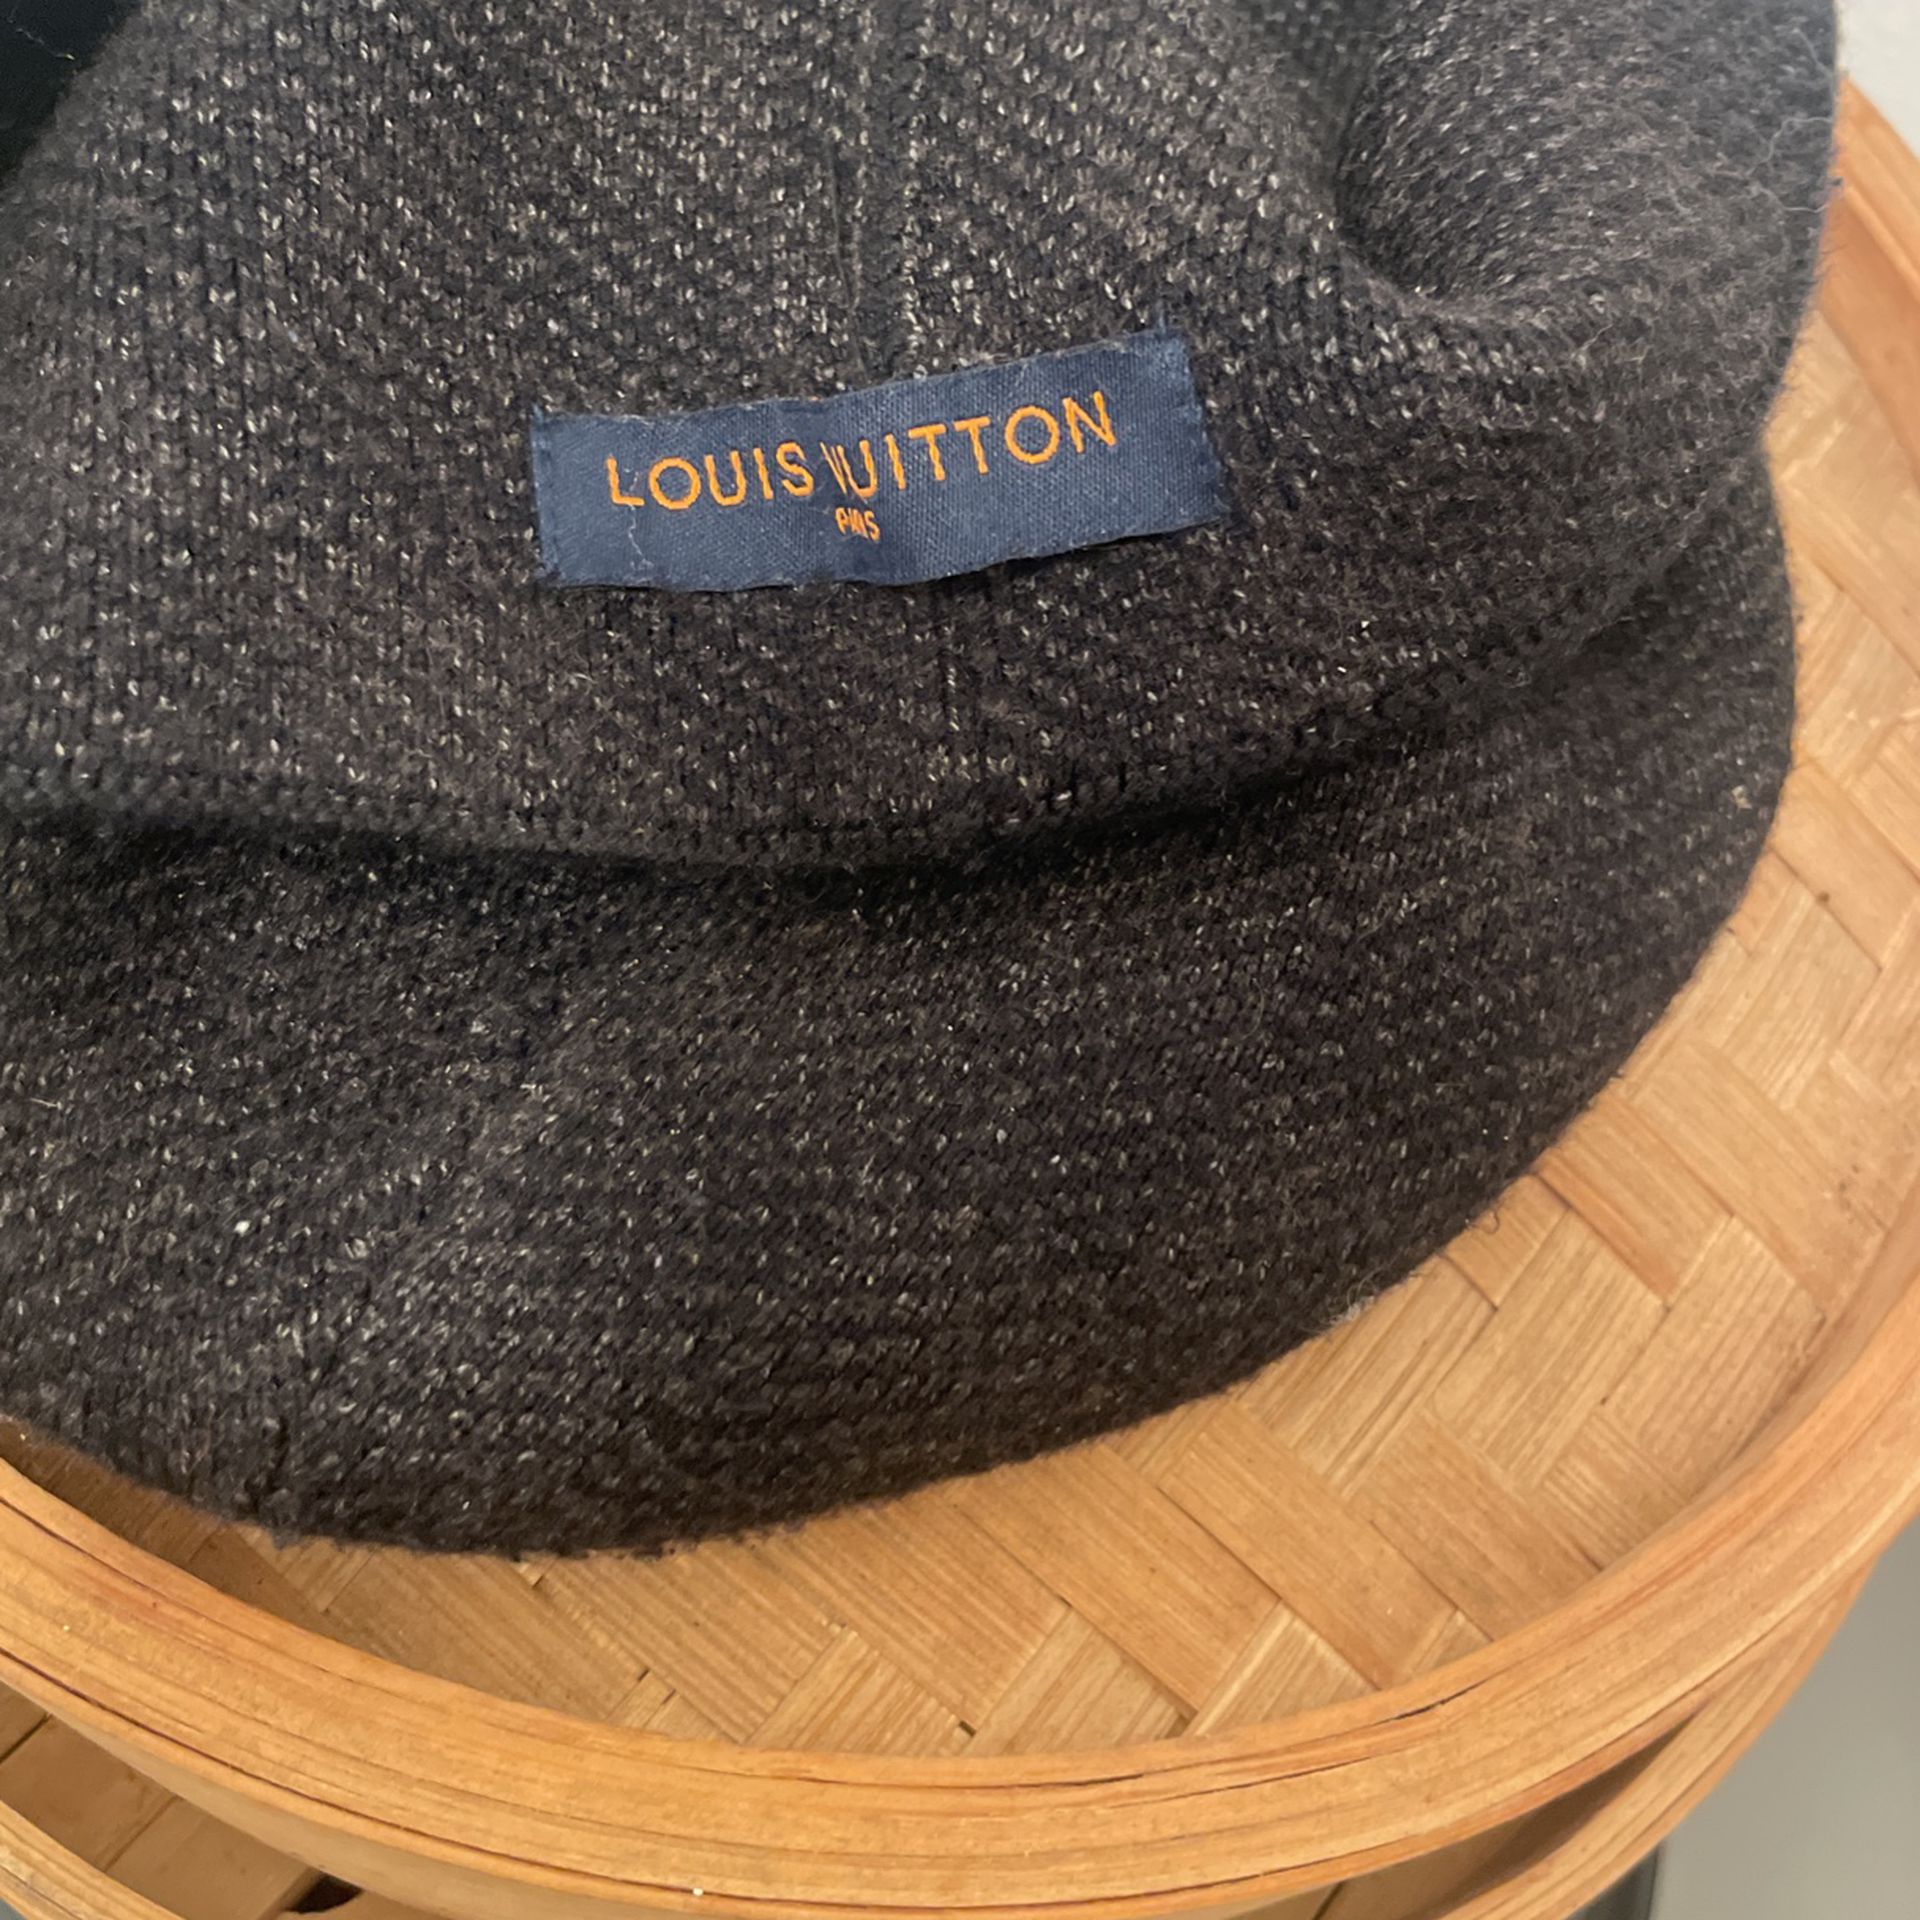 Louis Vuitton Hat Beanie For Sale In Long Beach, Ca